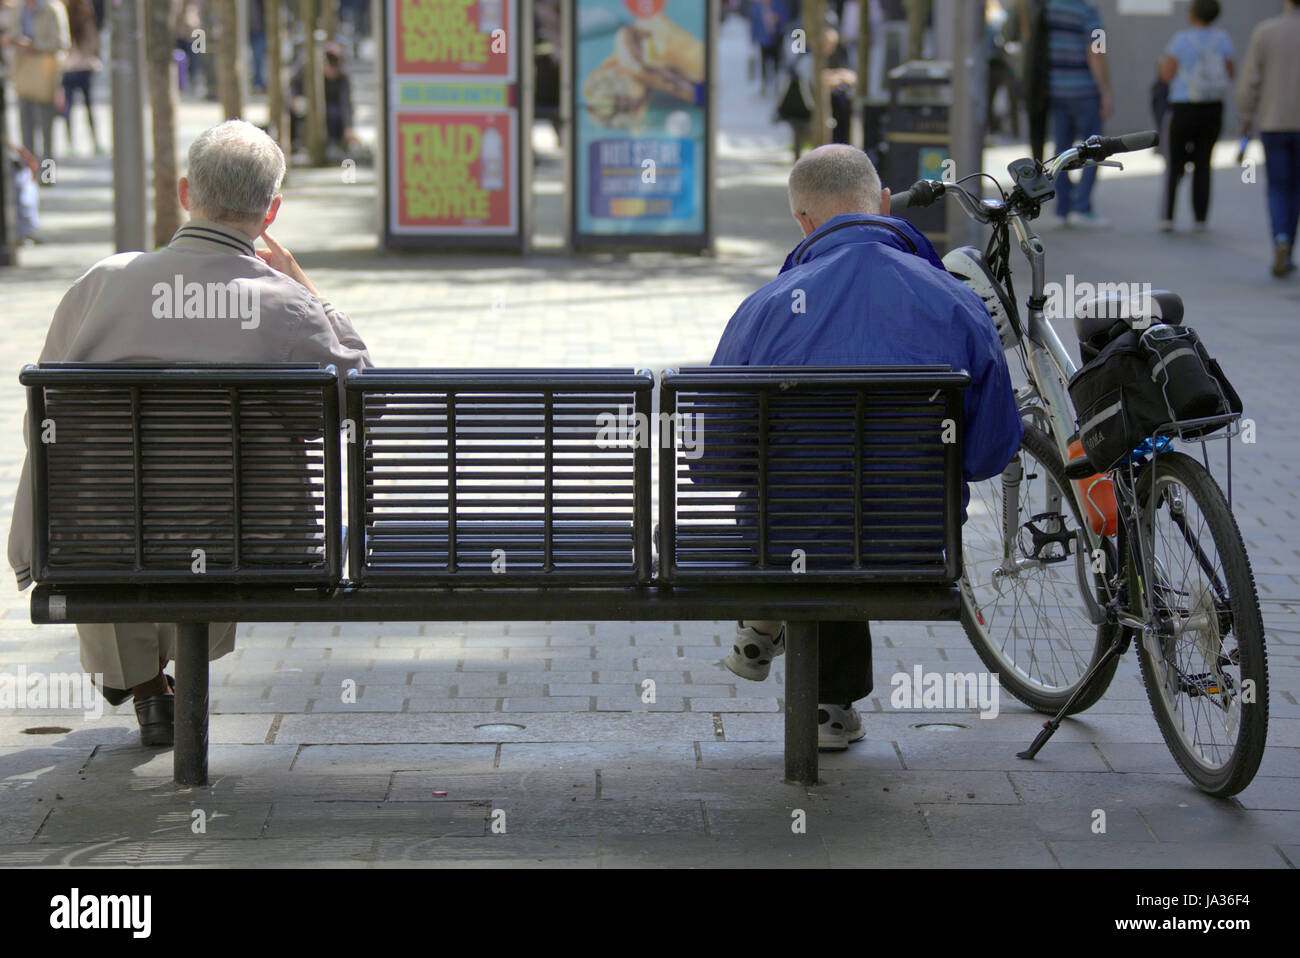 auf einer Bank sitzend von hinten zwei Männer mittleren Alters und ein Fahrrad angesehen Stockfoto